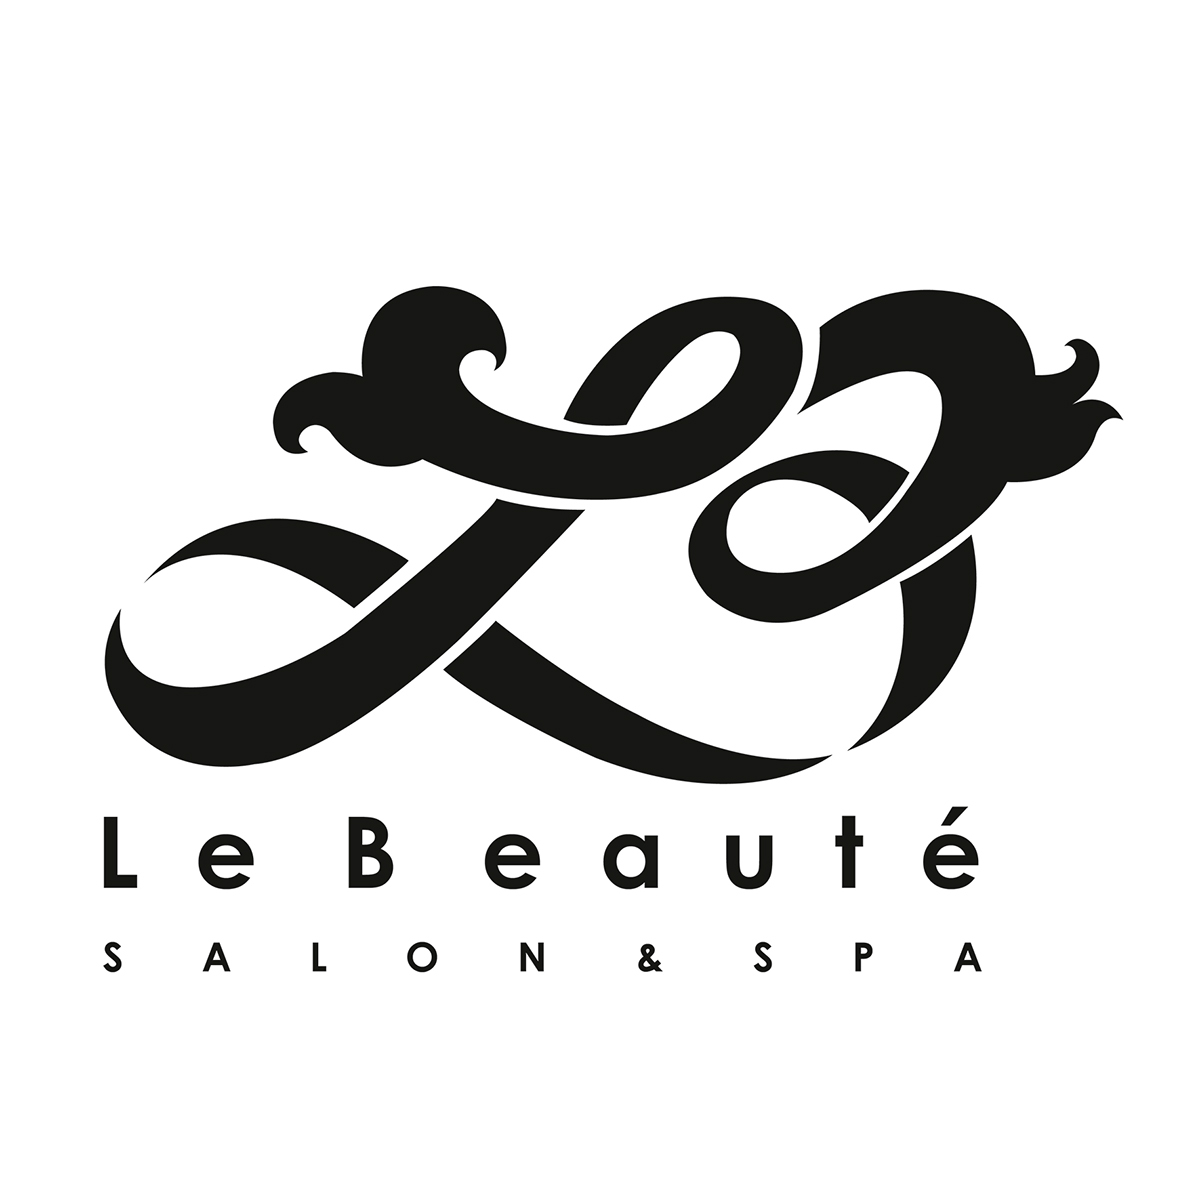 #Logo #salon #belleza #lebeaute #GT #msc